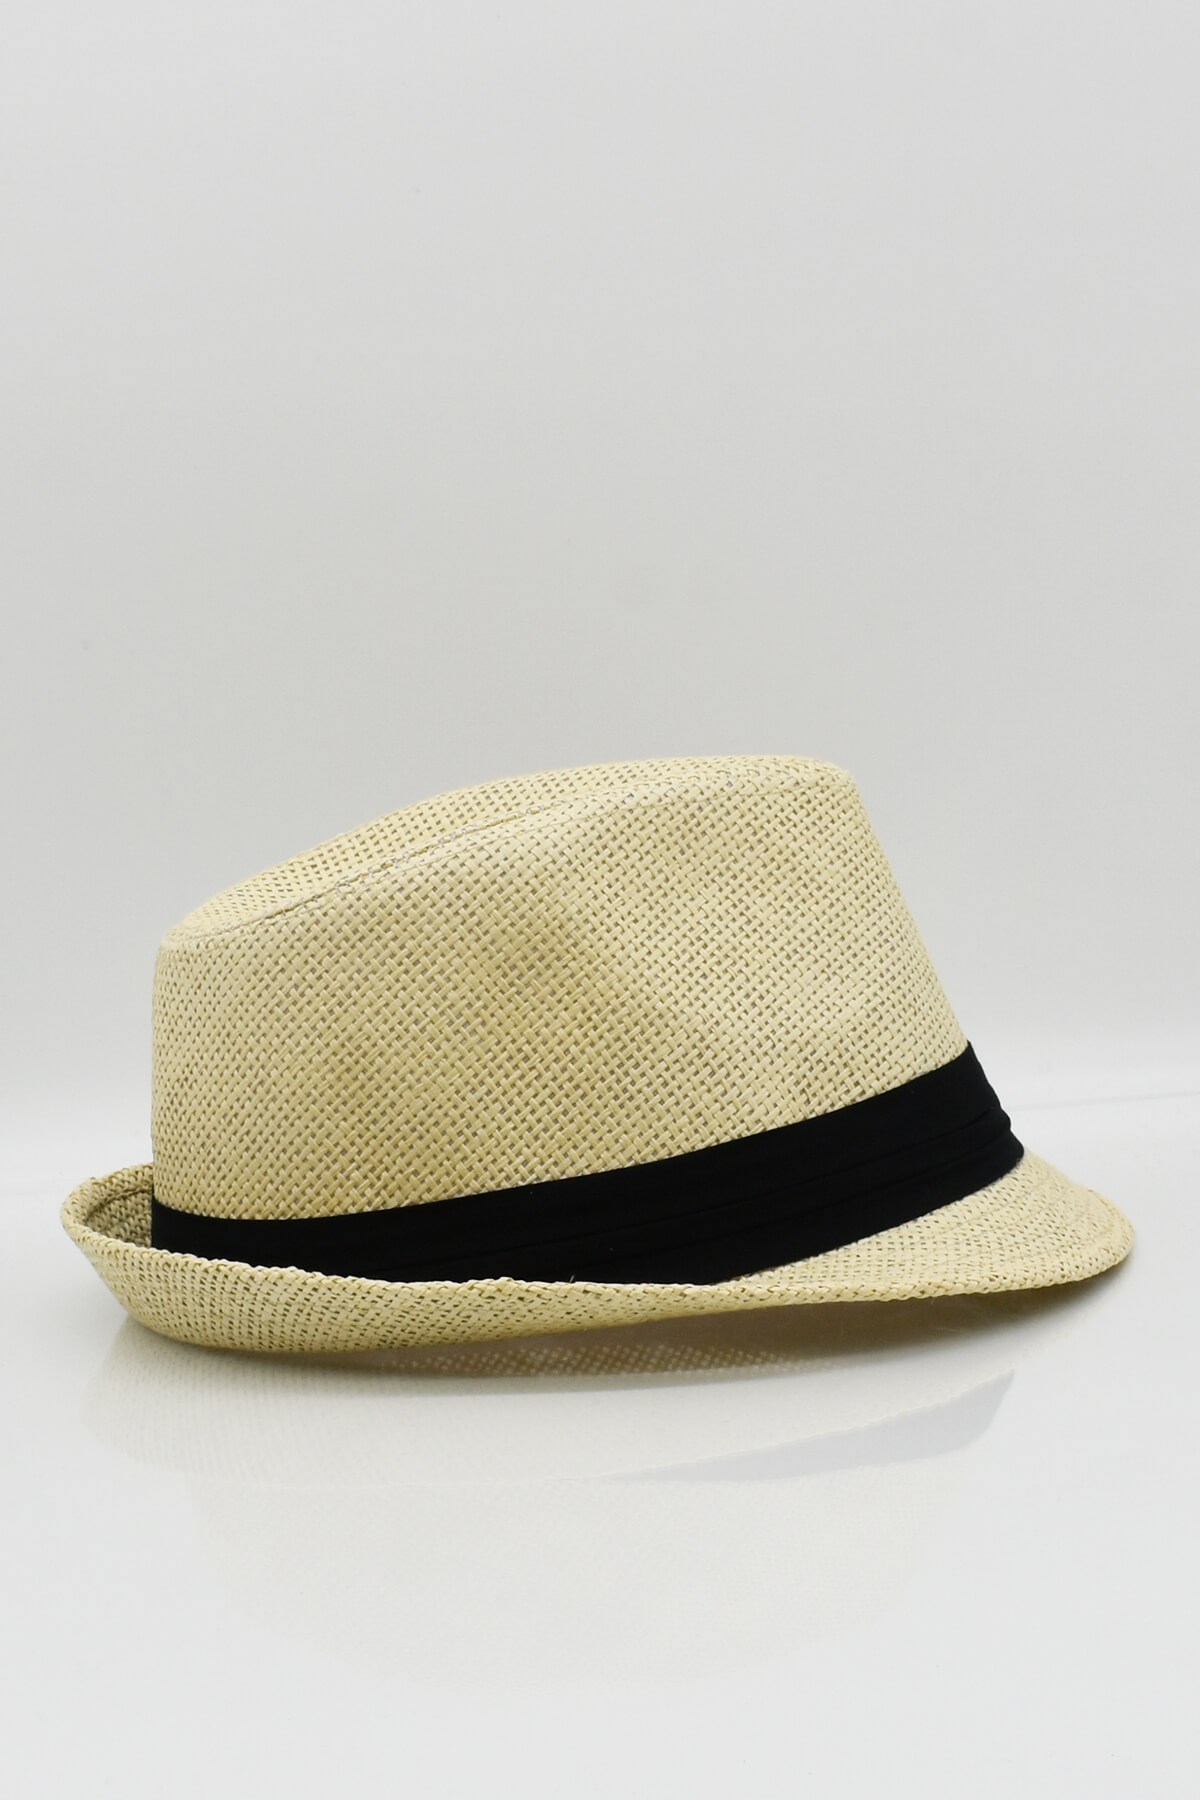 Külah Erkek Fötr Hasır Panama Yazlık Şapka - Bej KLH0770